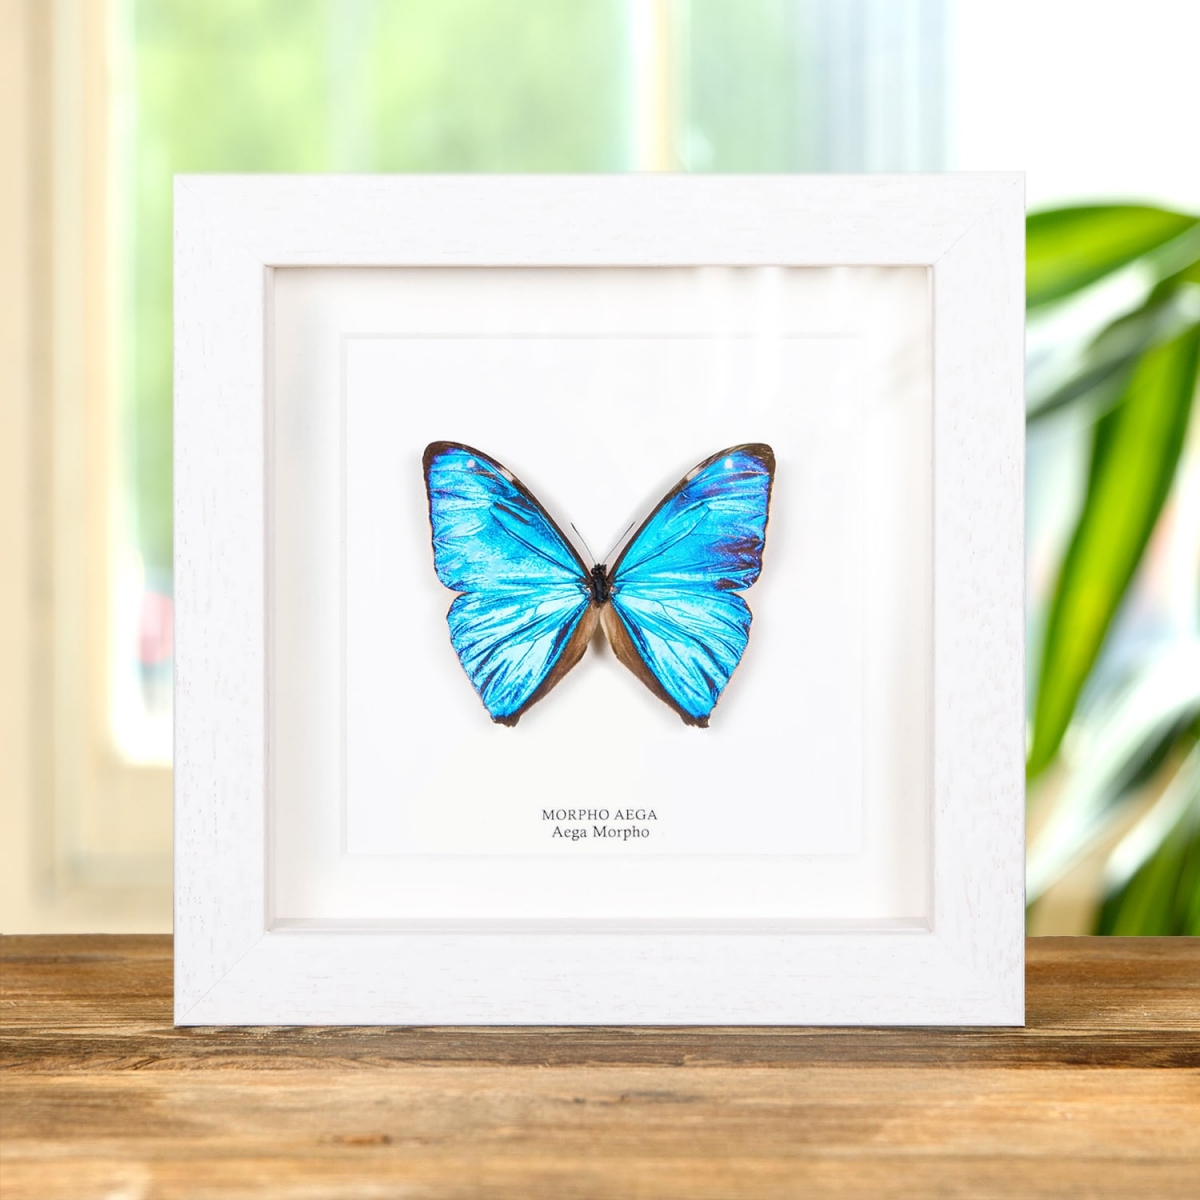 Aega Morpho Butterfly in Box Frame (Morpho aega)